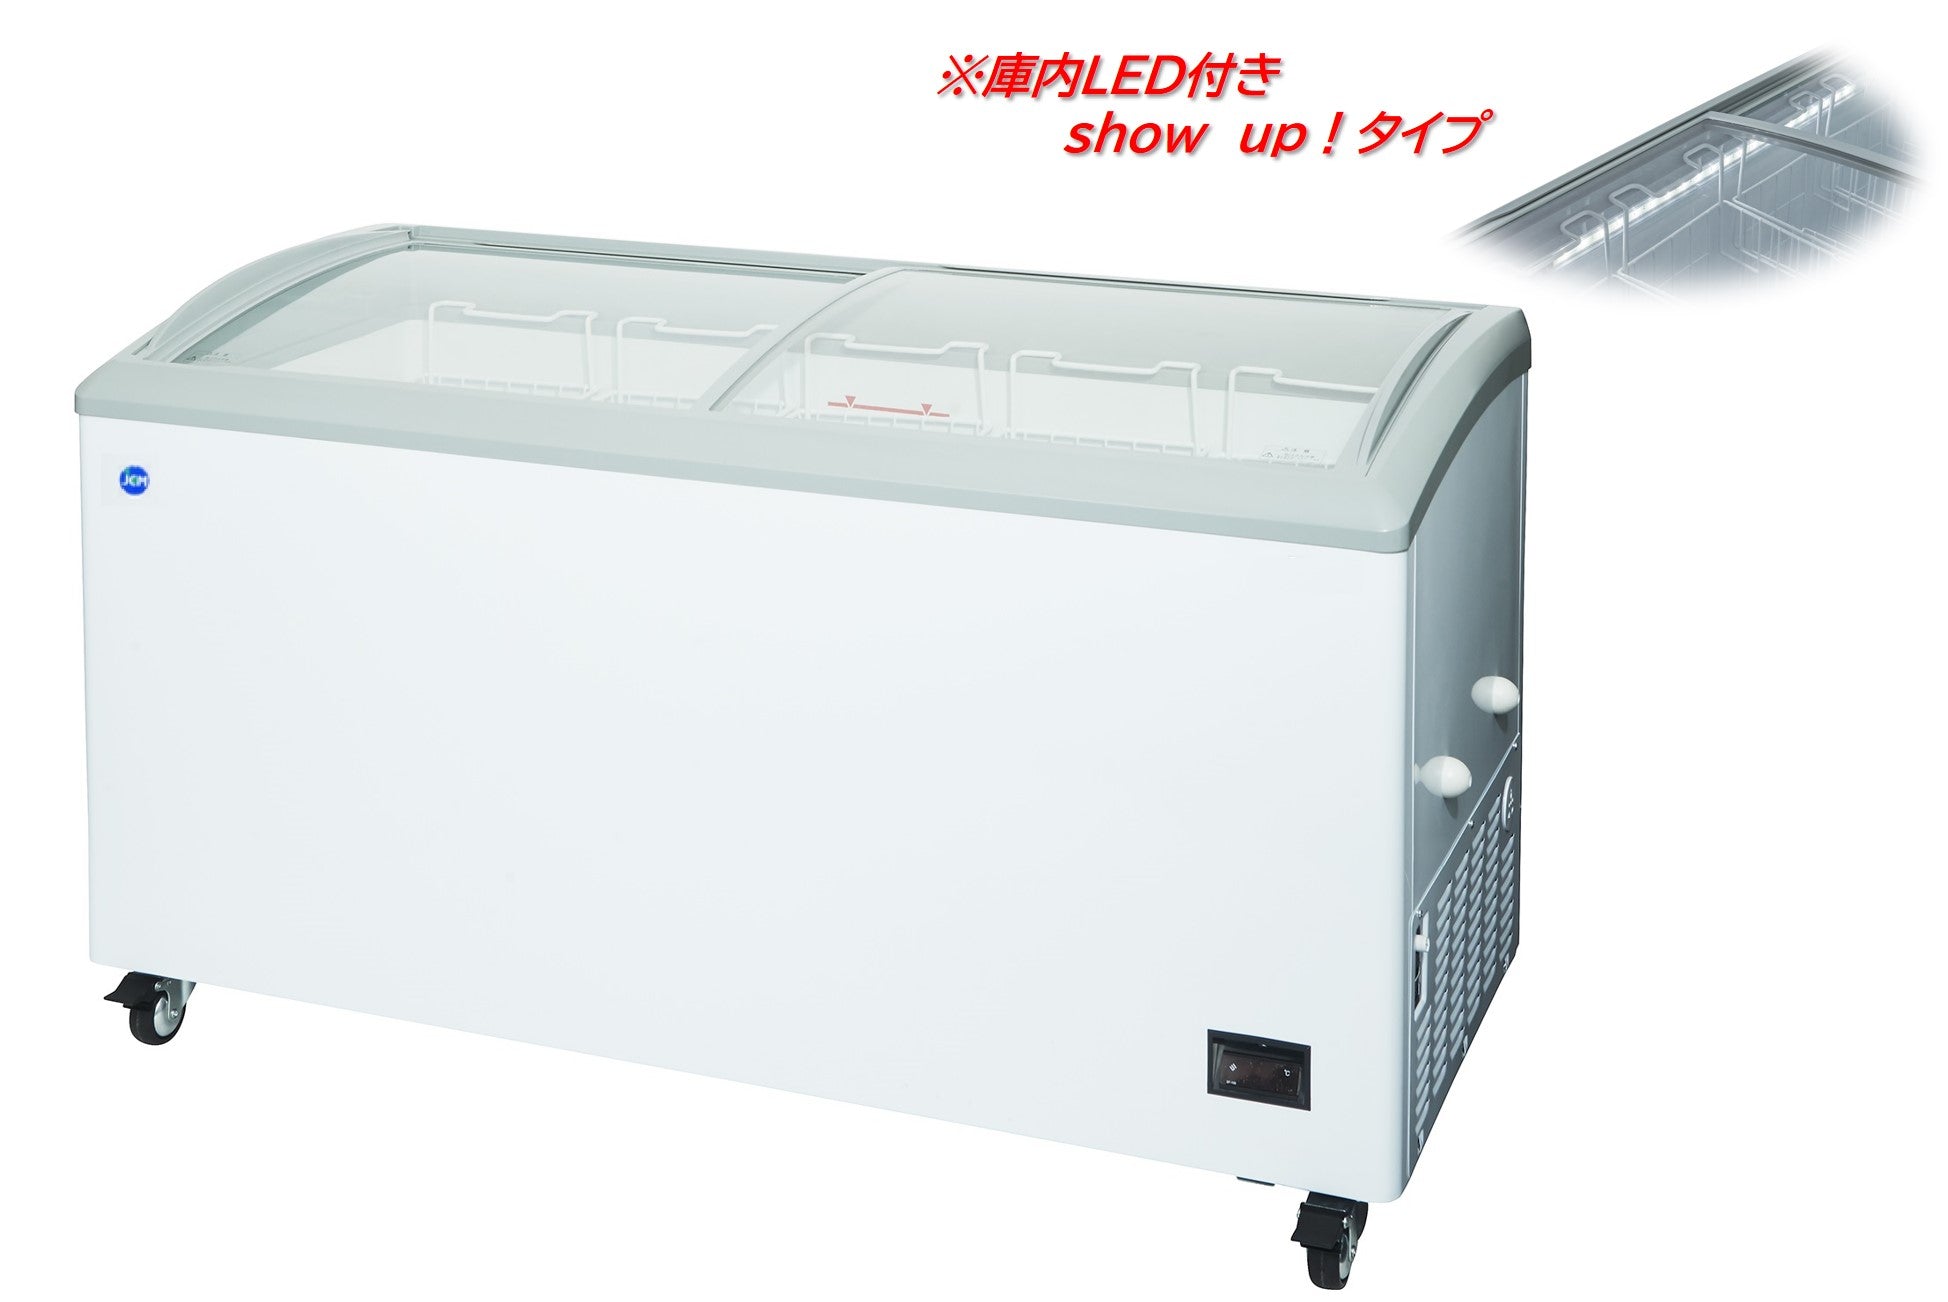 業務用冷凍ストッカーJCMCS-330L冷凍庫今1台しか残ってます